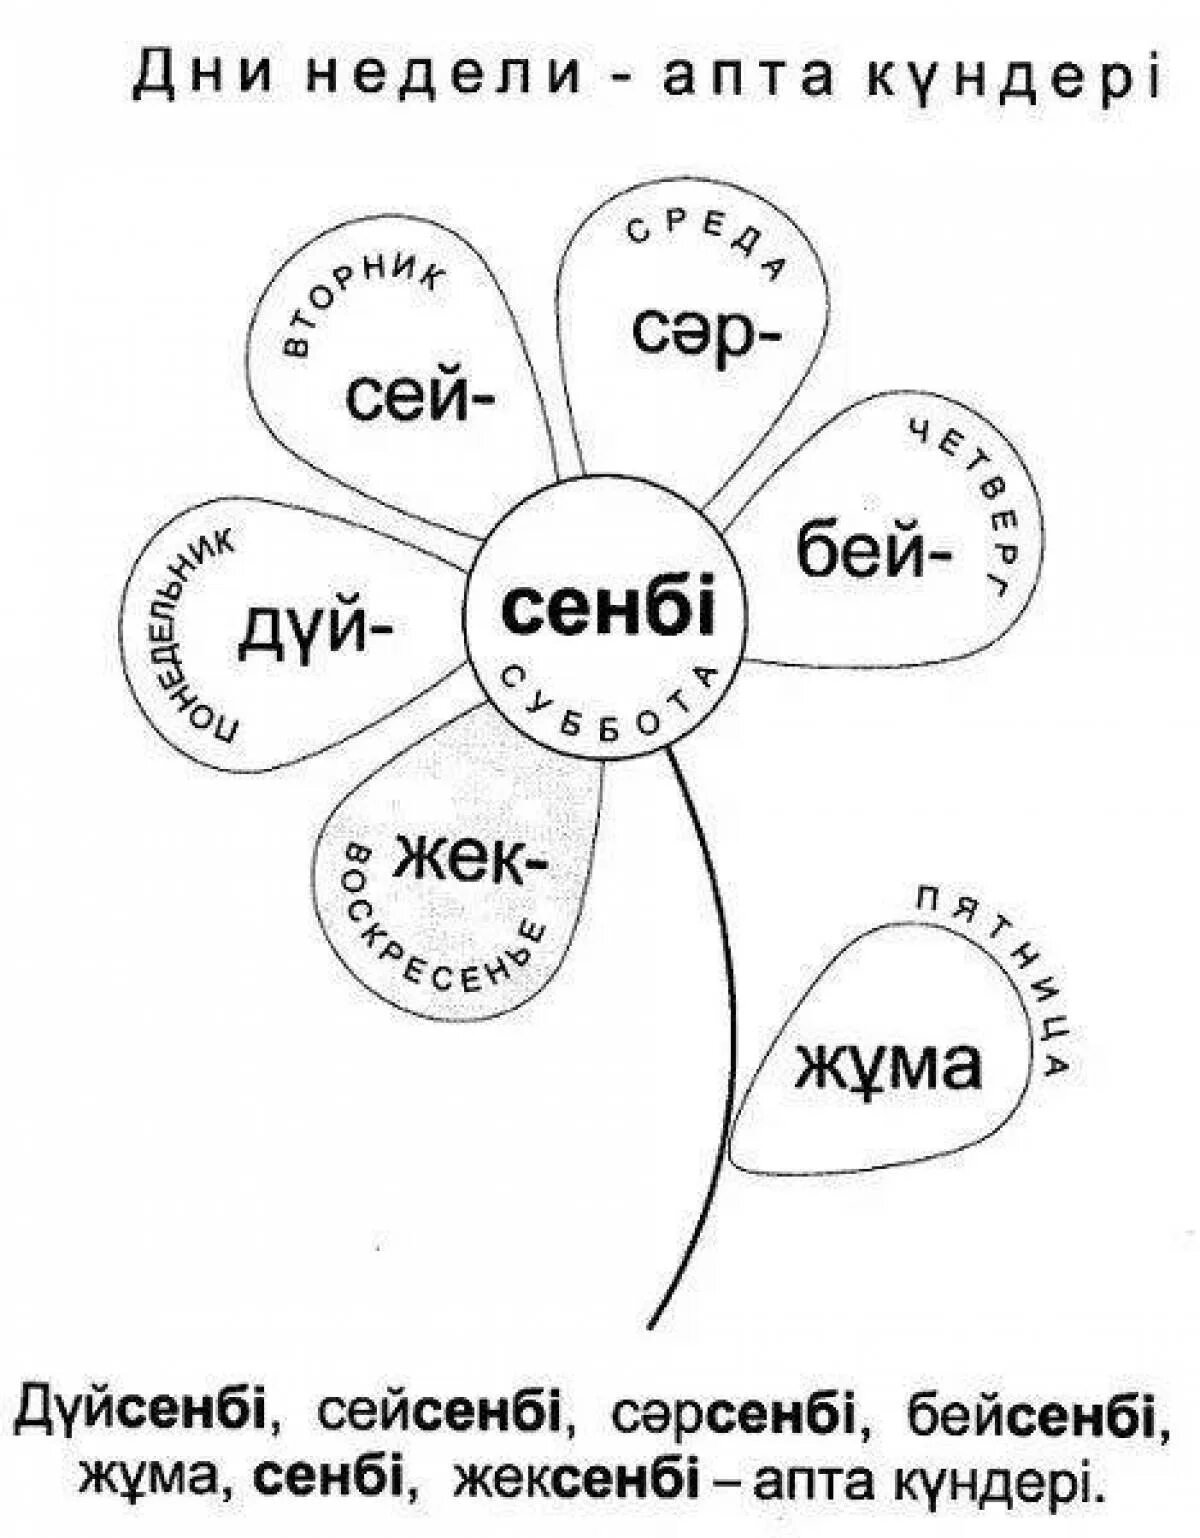 Задания по казахскому языку для детей. Задания по казахскому языку для дошкольников. Раскраска по казахскому языку. Дни недели раскраска